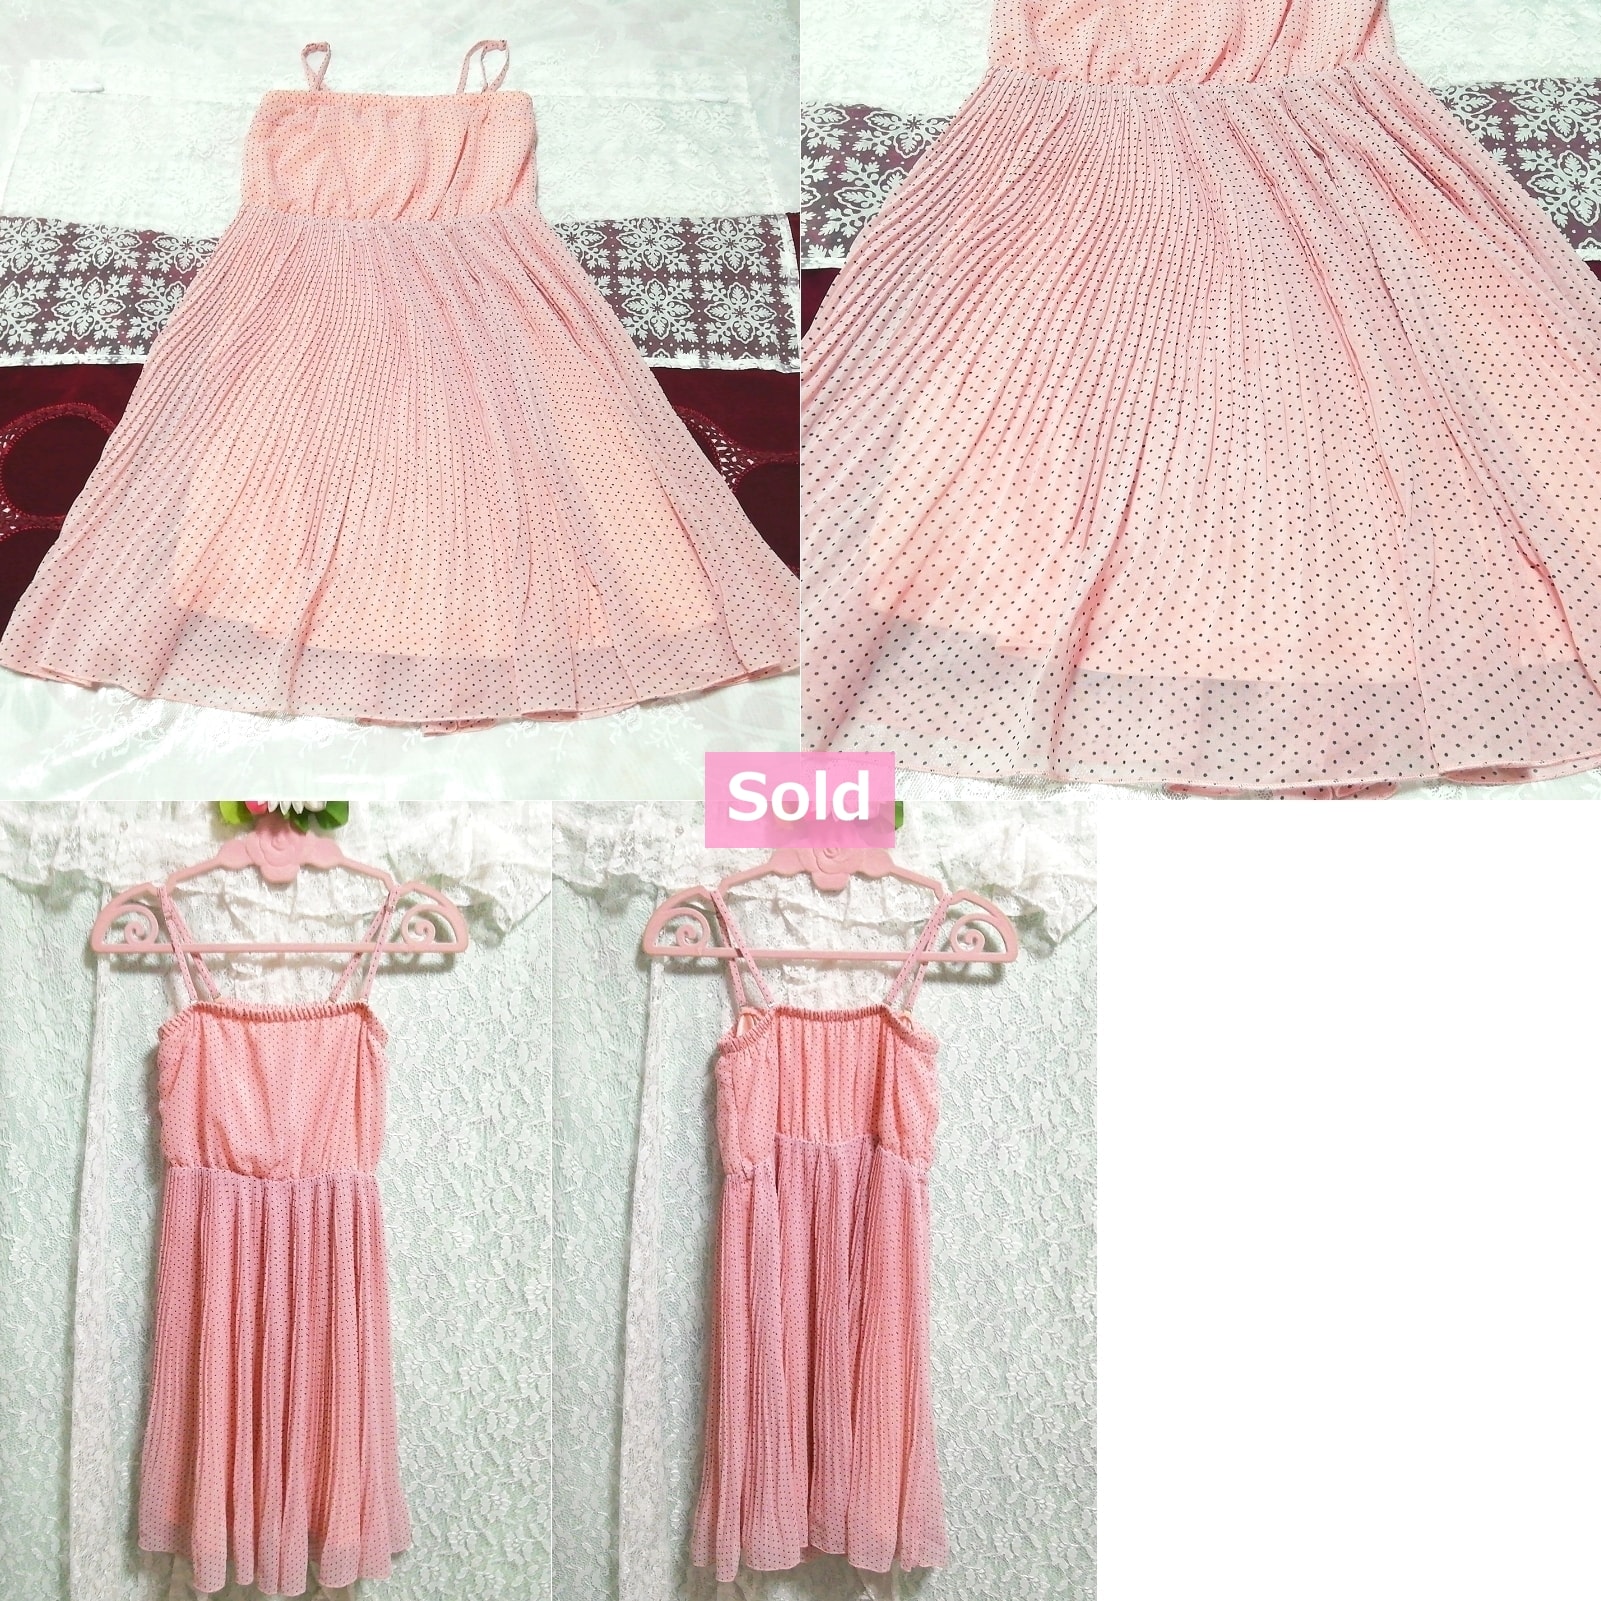 Розовое шифоновое платье-неглиже с камзолом в горошек и бейджидолл, мода и женская мода и камзол